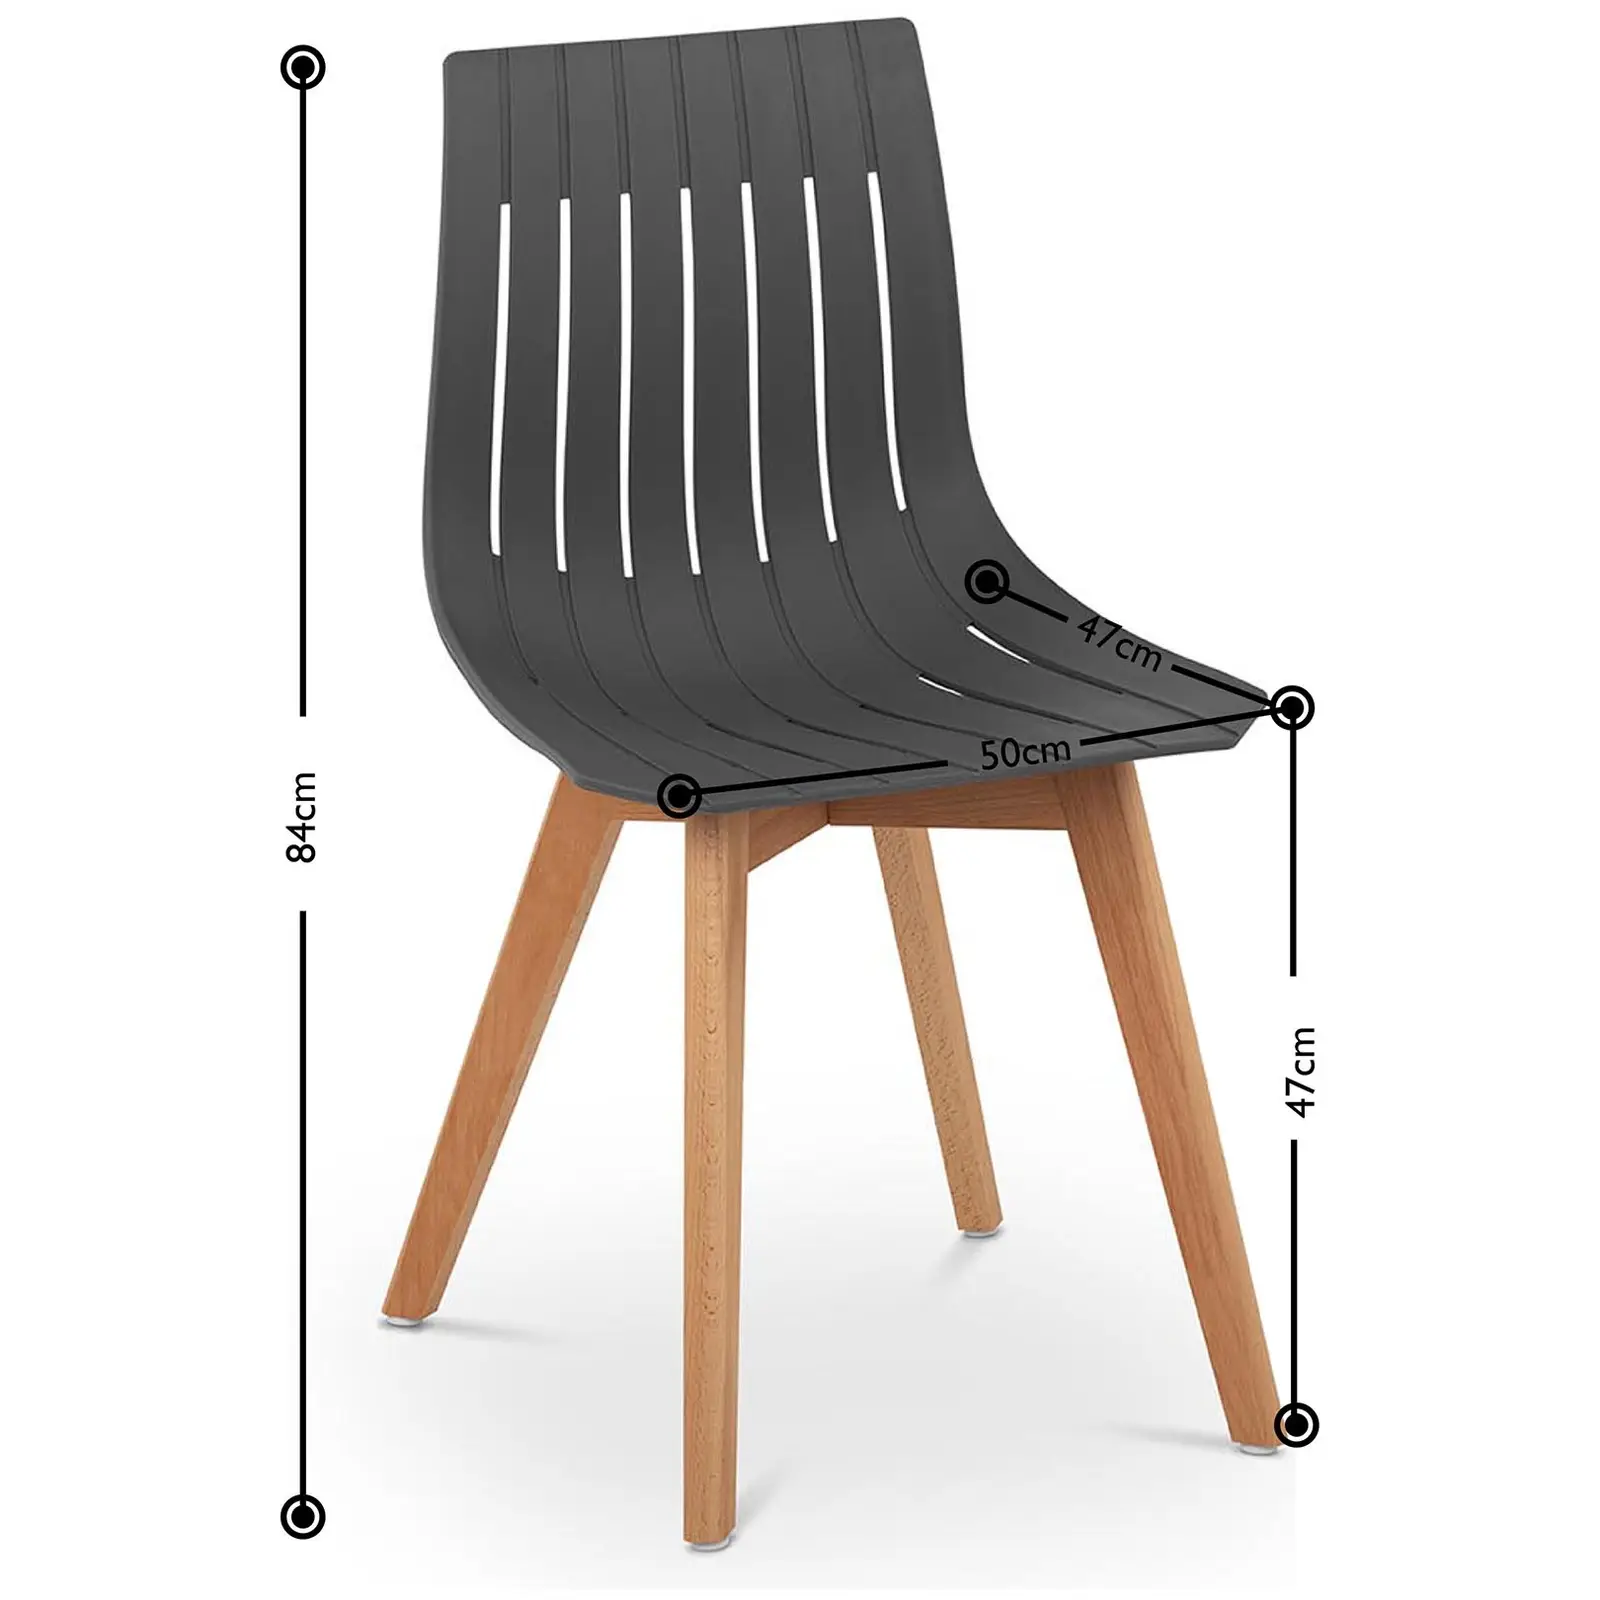 Chaise - Lot de 2 - 150 kg max. - Surface d'assise de 50 x 47 cm - Coloris gris